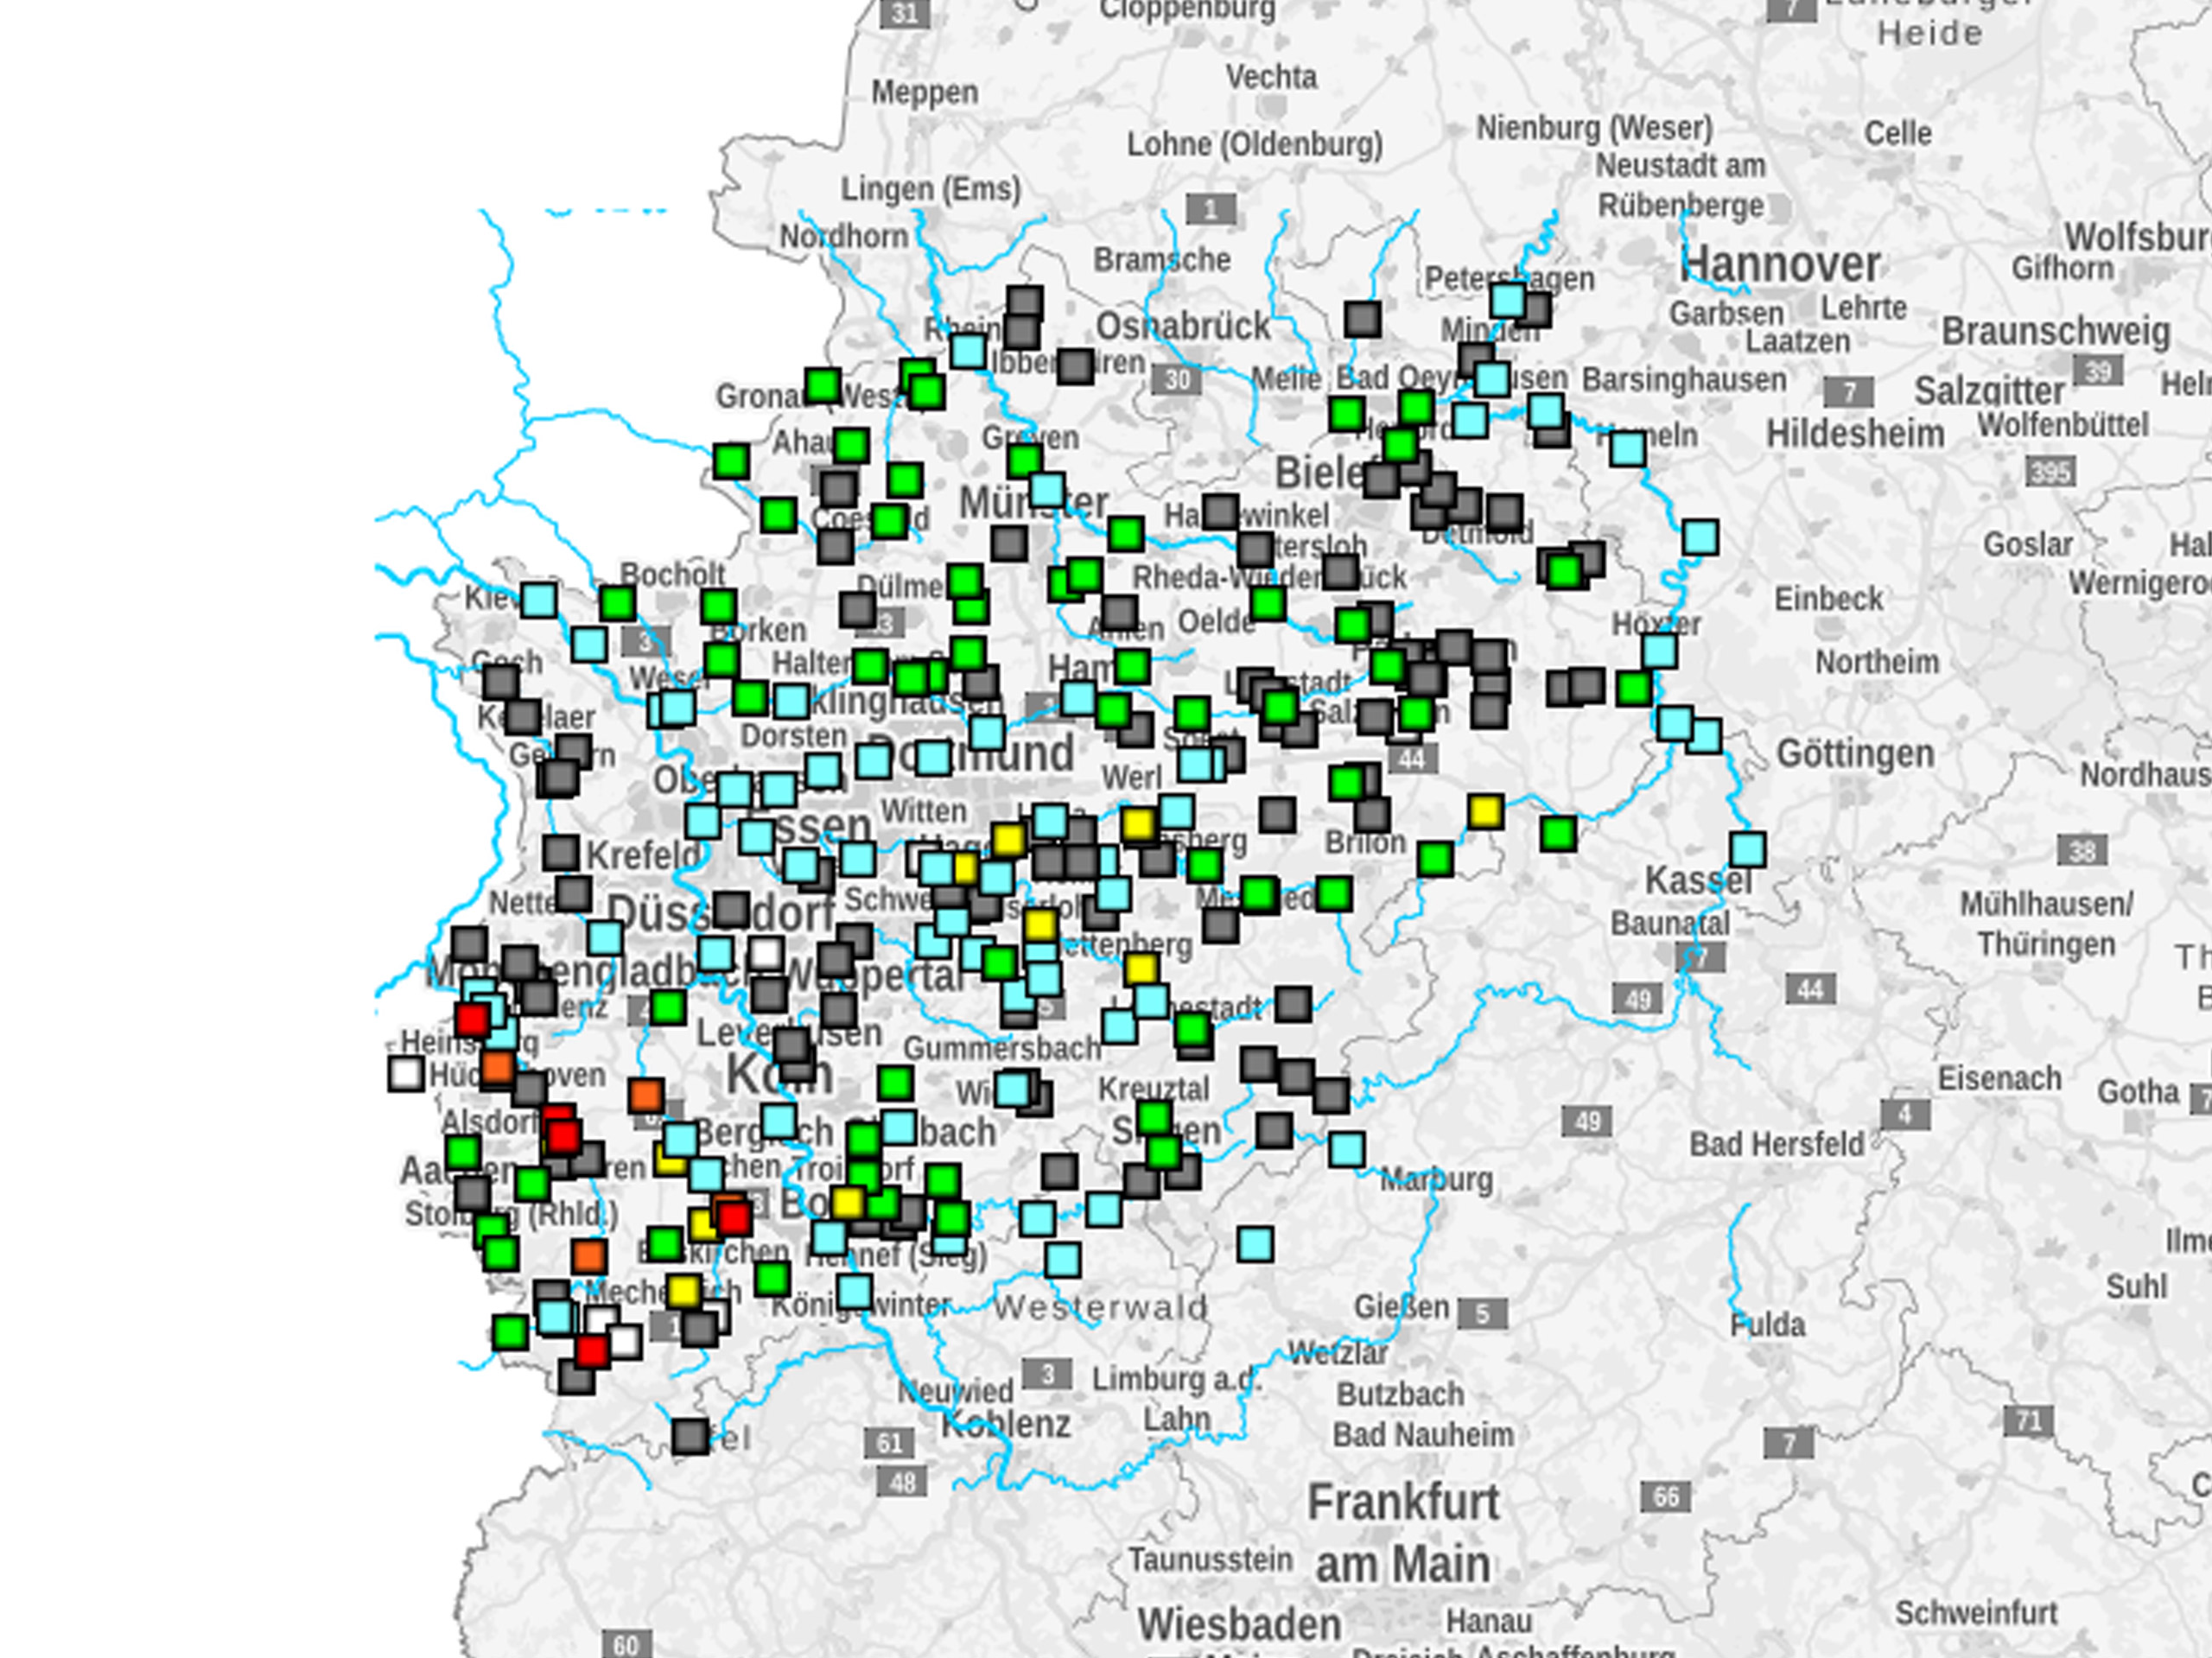 Hygon-Hochwasser-Informationswerte-Lagebereichte-WOL-NRW